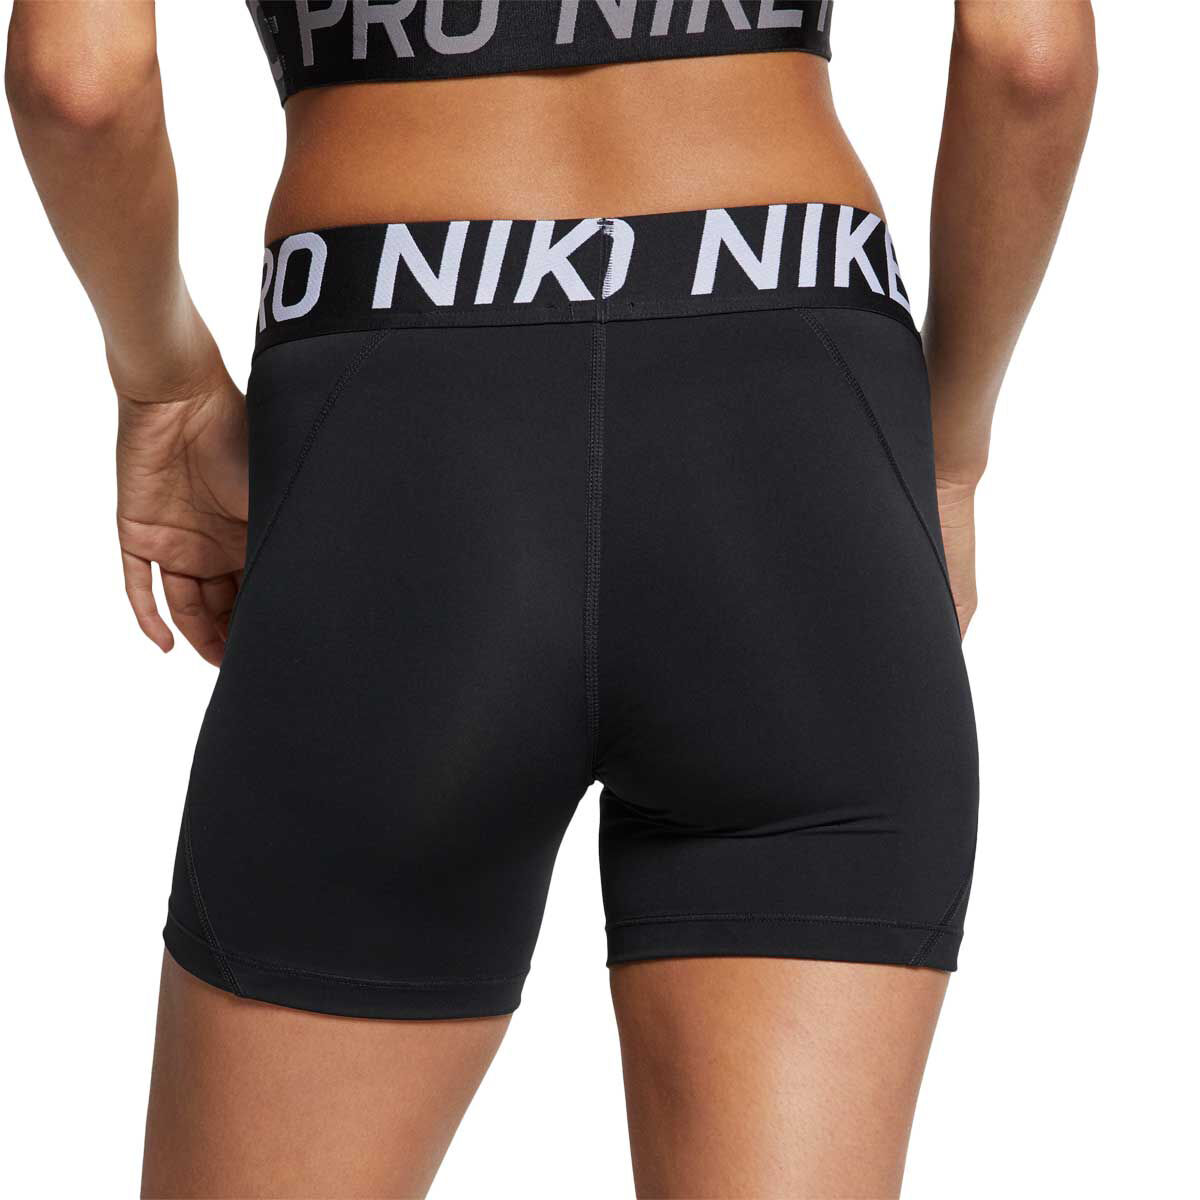 5 nike pro shorts